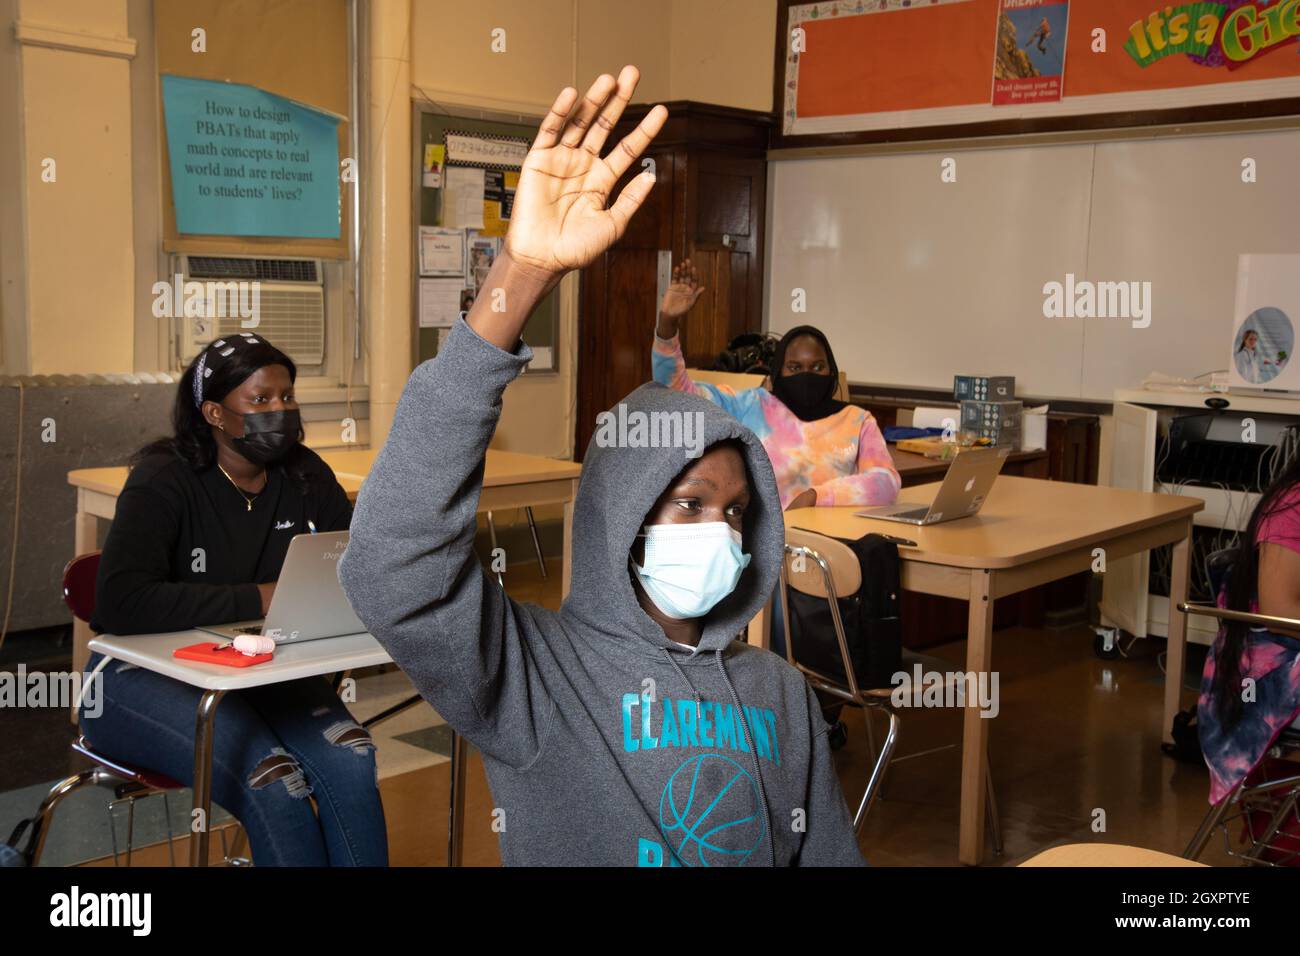 Istruzione High School scena in aula, studente maschio alzando la mano per rispondere alla domanda, studenti femmina dietro di lui, uno alzando la mano maschere facciali Covid Foto Stock